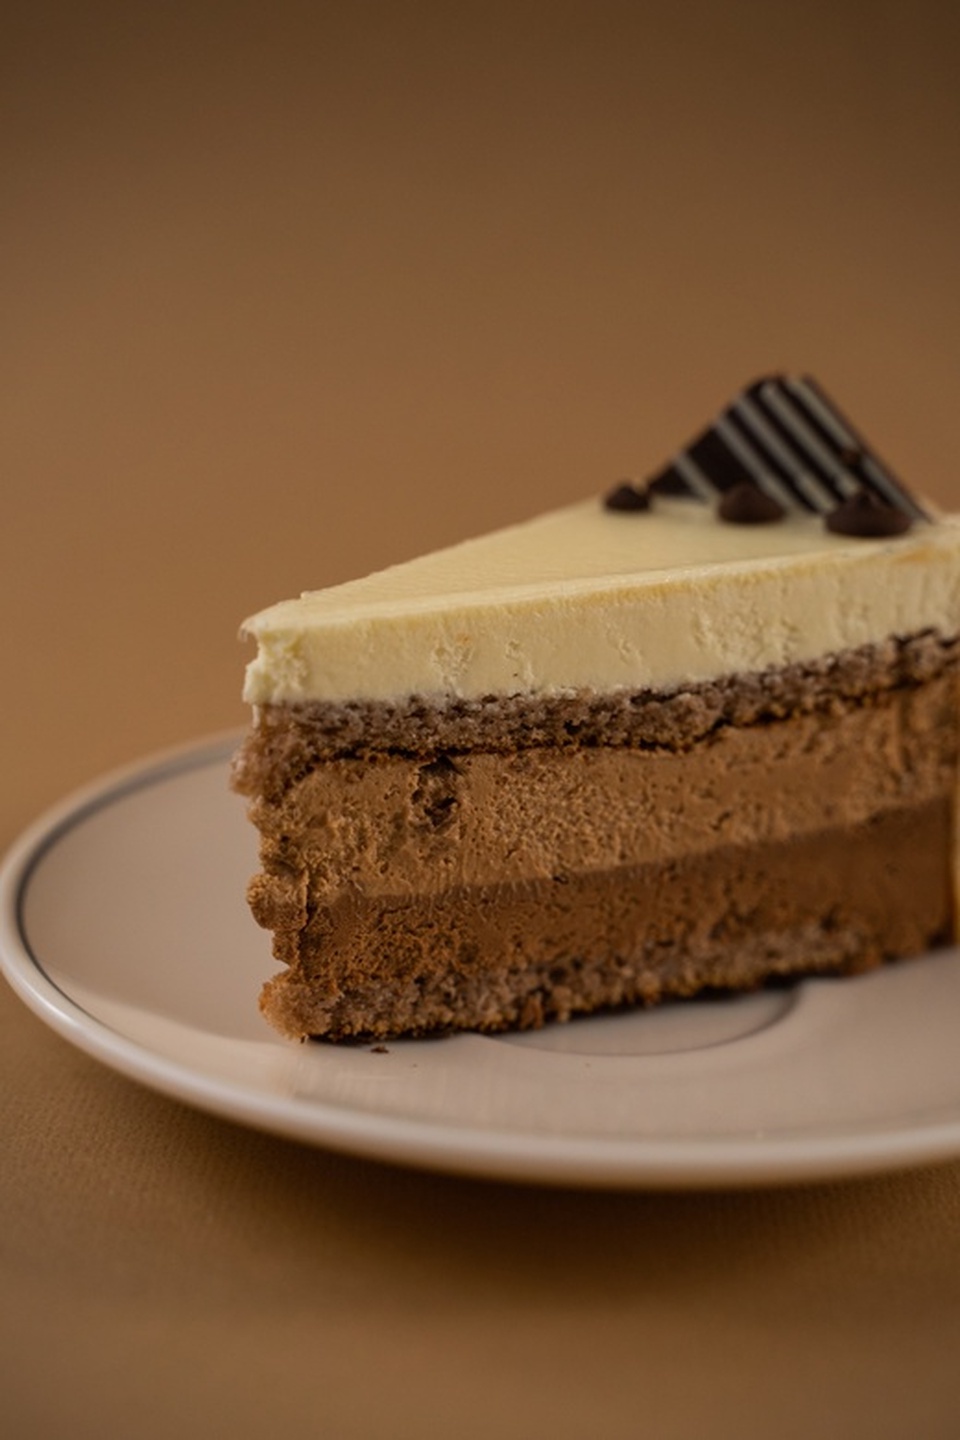 Пирожное "Три шоколада" - 195 ₽, заказать онлайн.